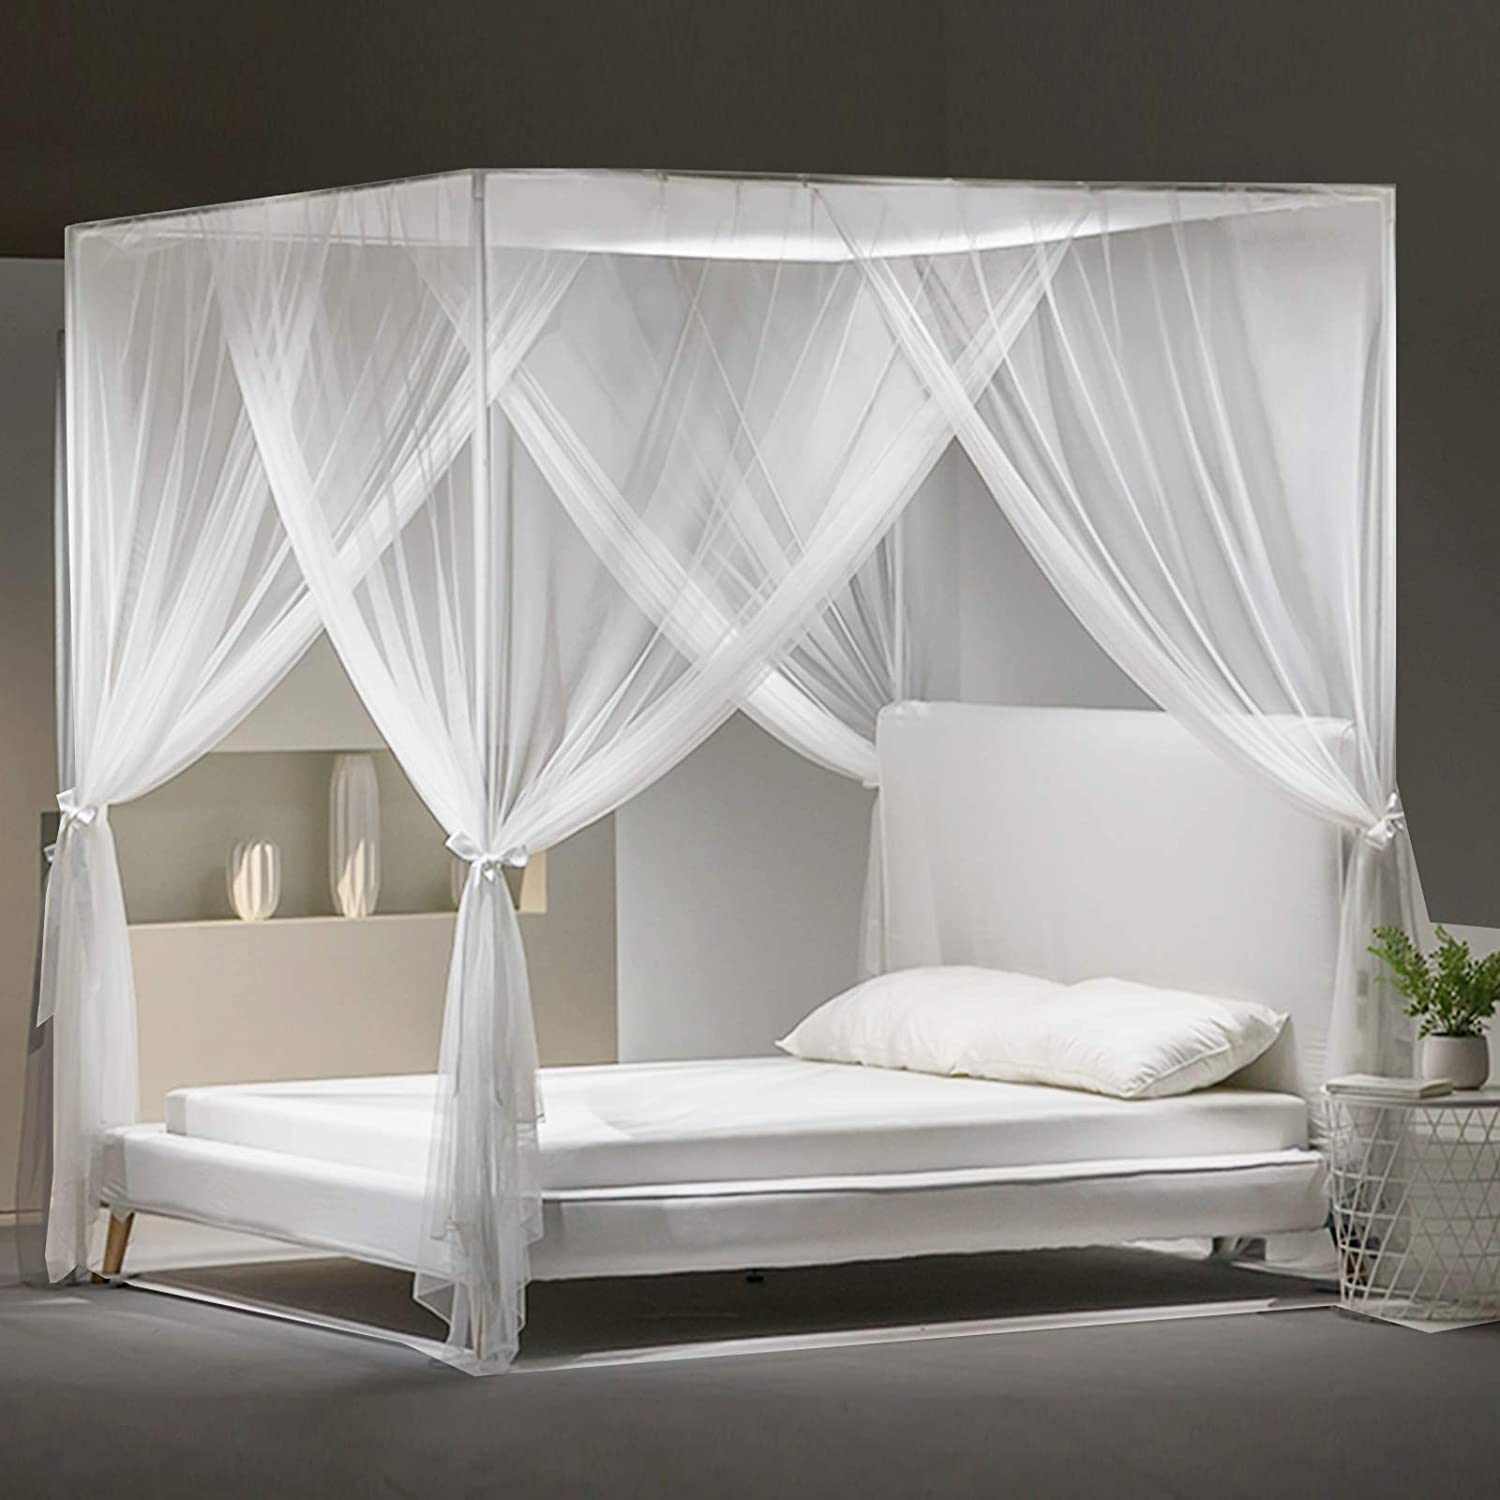 DECARETA Moskitonetz Bett Doppelbett Großes Mückennetz Weisses  Mückenschutznetz 60 * 260 * 1100 cm Fliegennetz Rund Insektennetz Bett für  Doppelbett